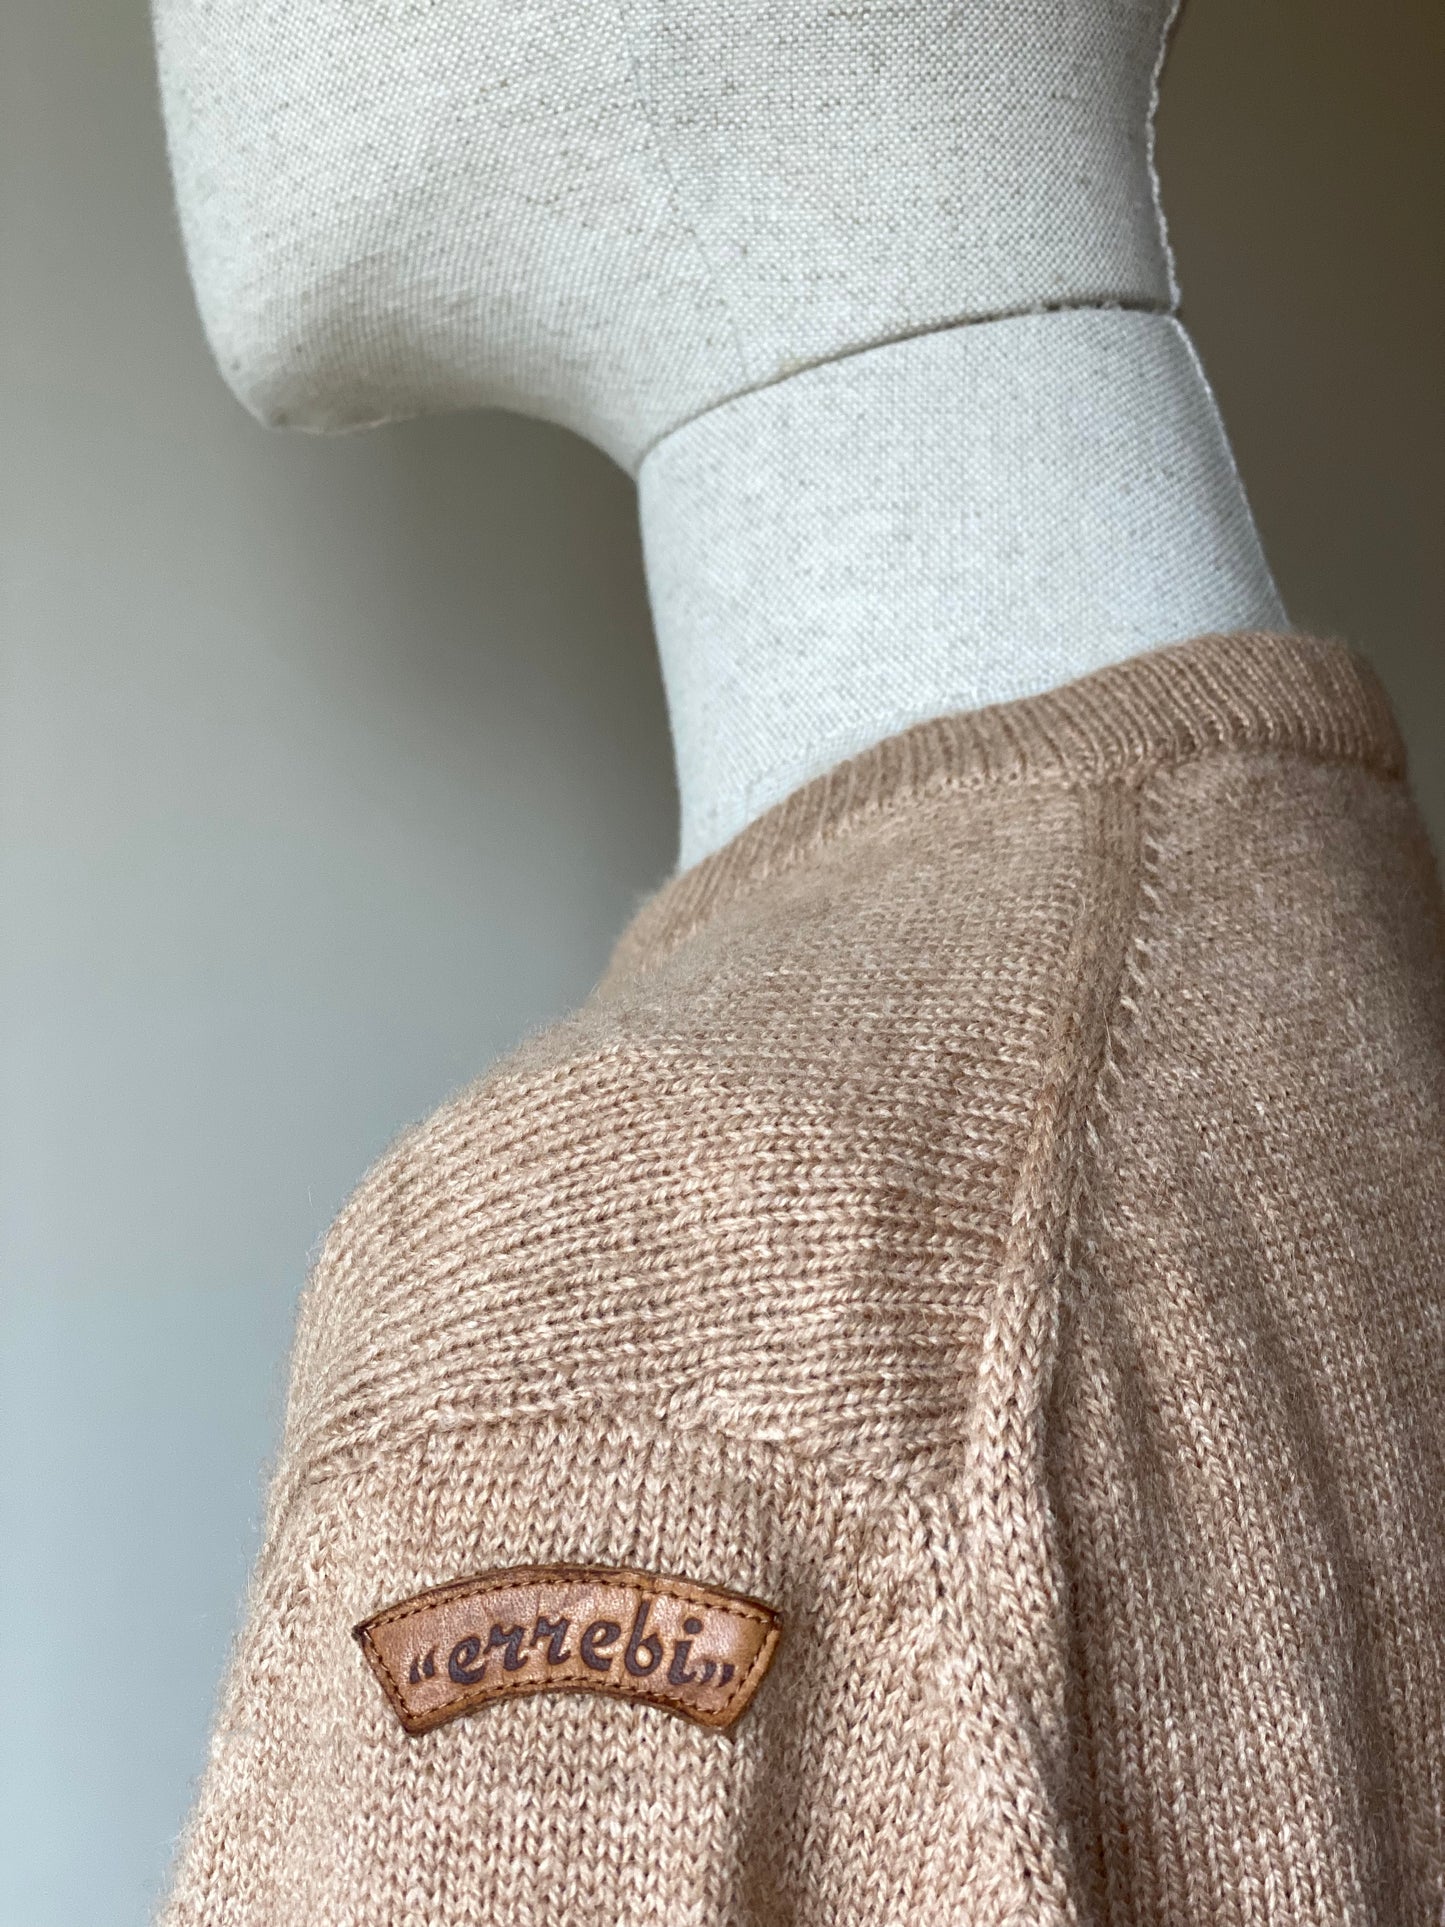 Vintage Beige Round-Neck Sweater